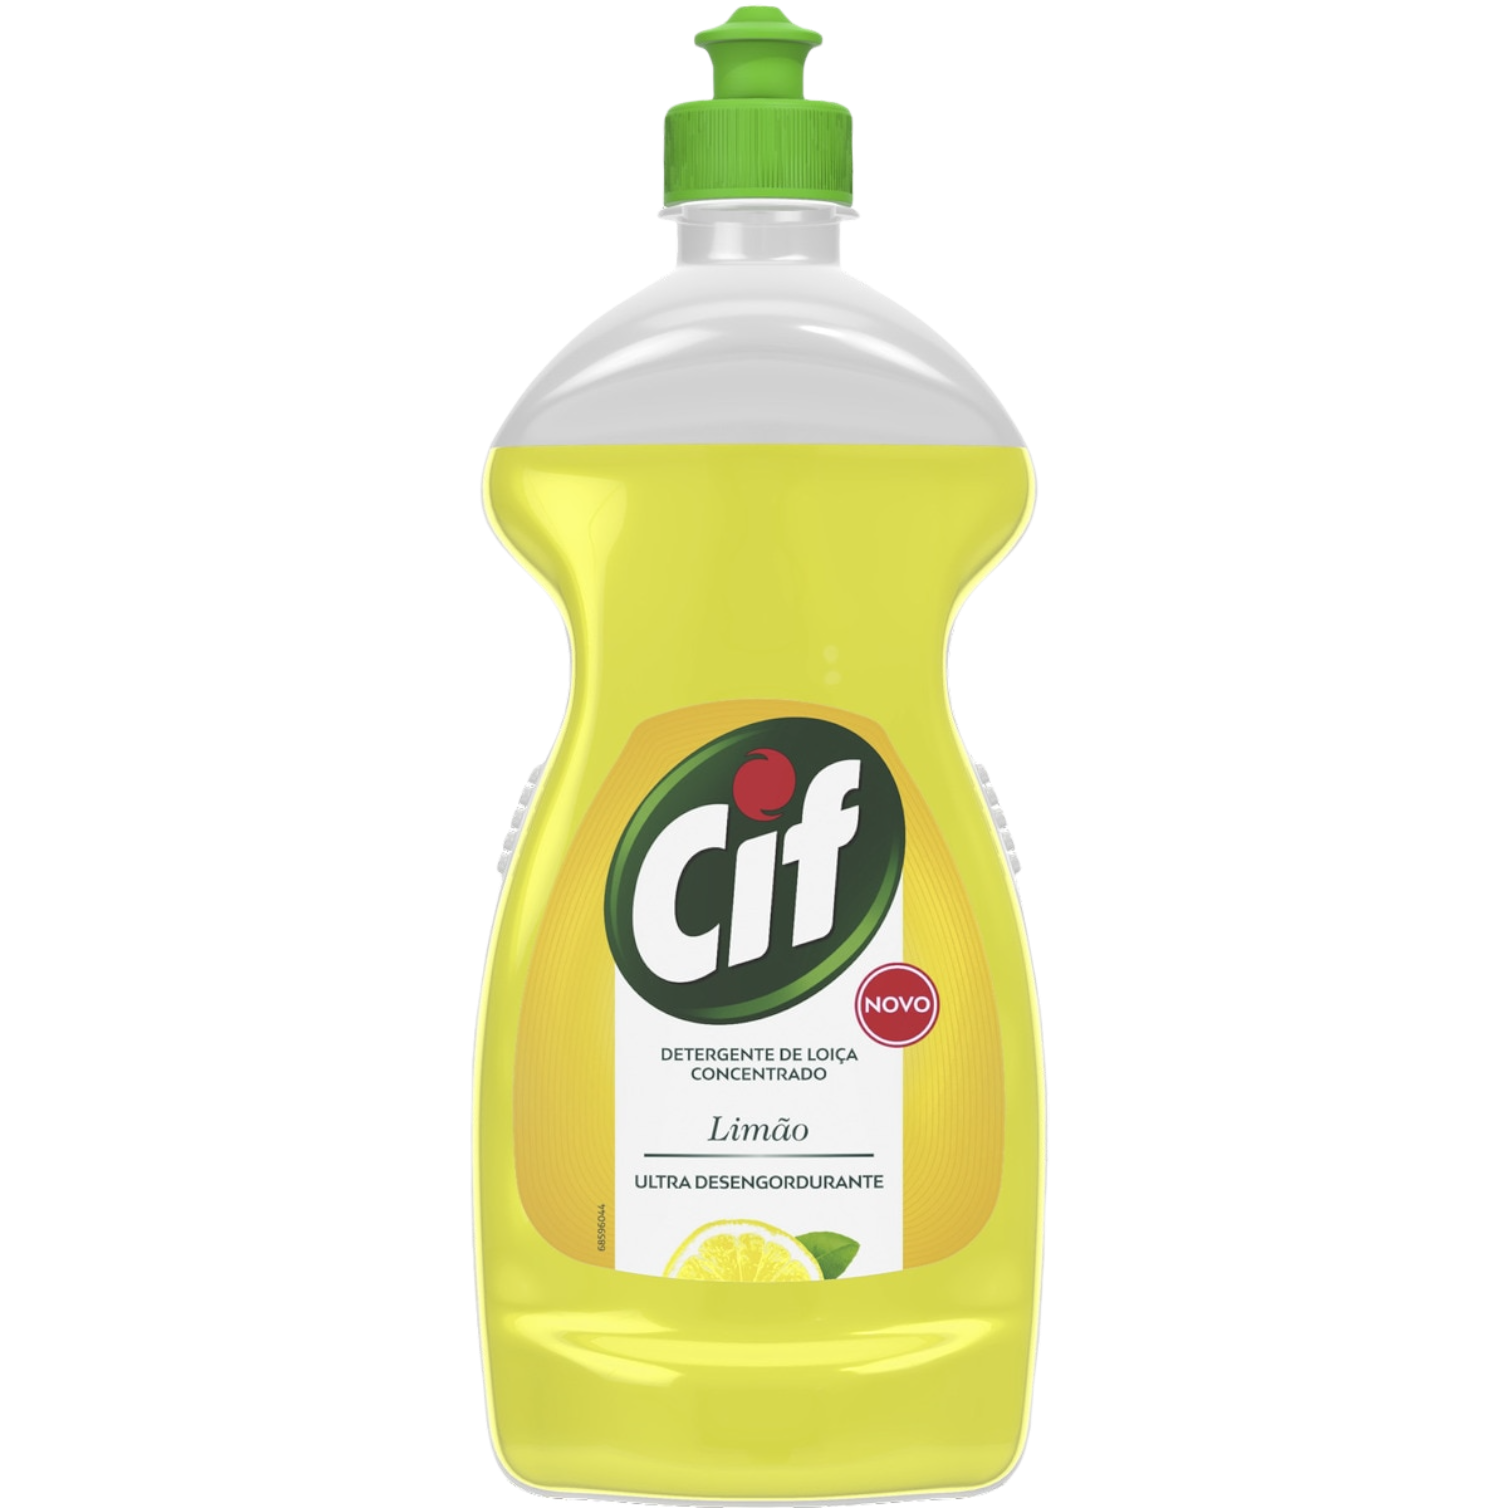 CIF Detergente de Loiça 600ml